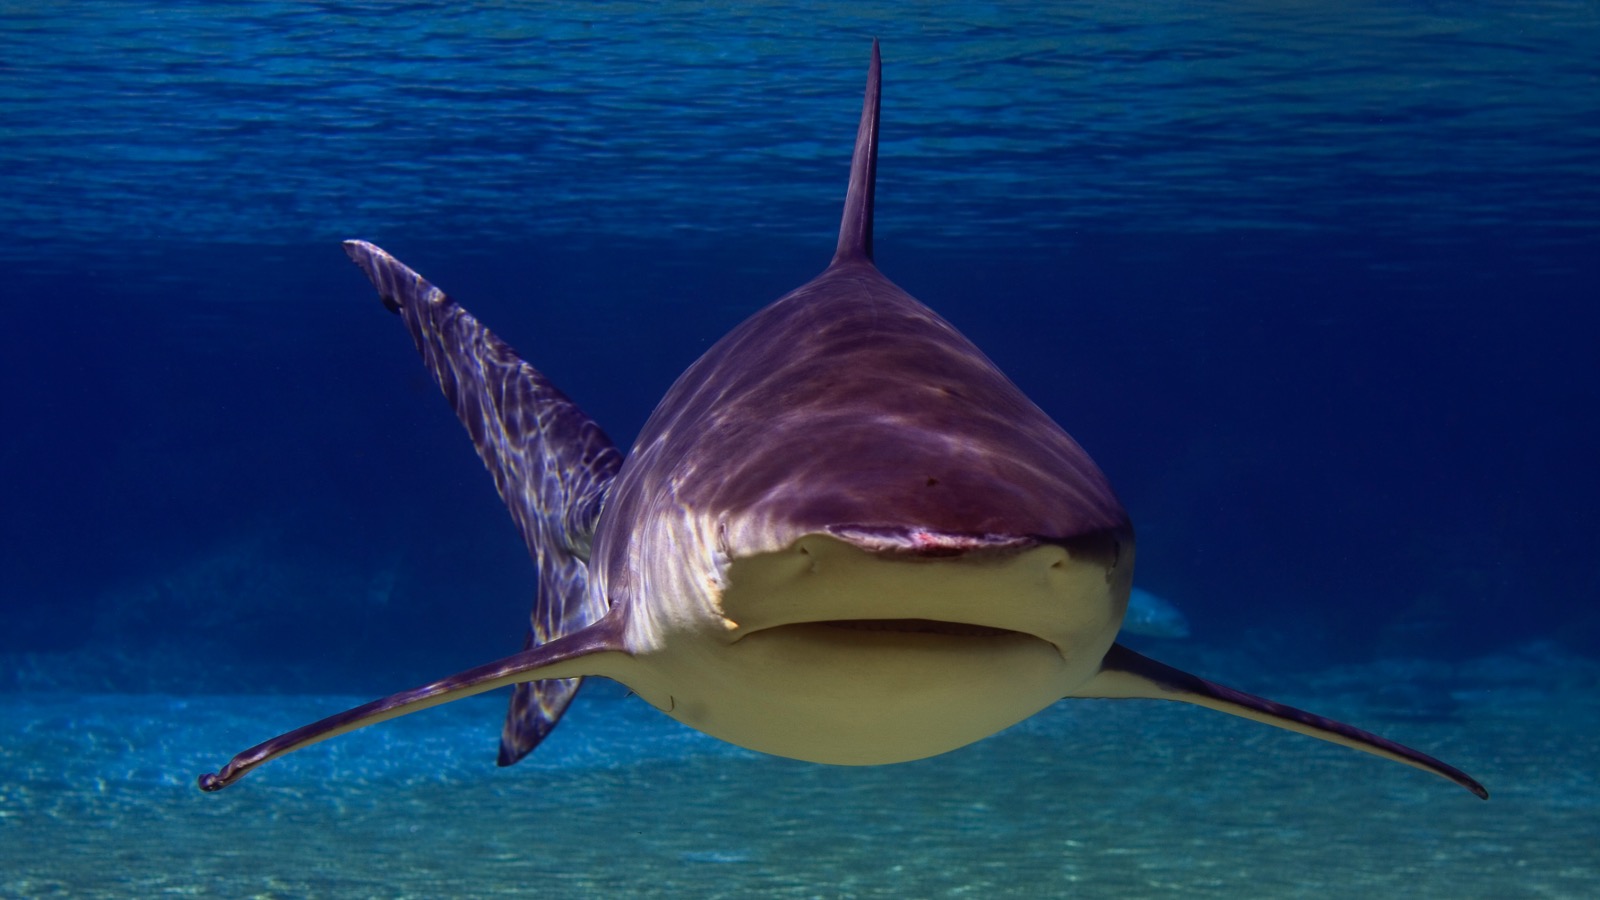 Angler Catches Massive Bull Shark Fishing In Florida Keys